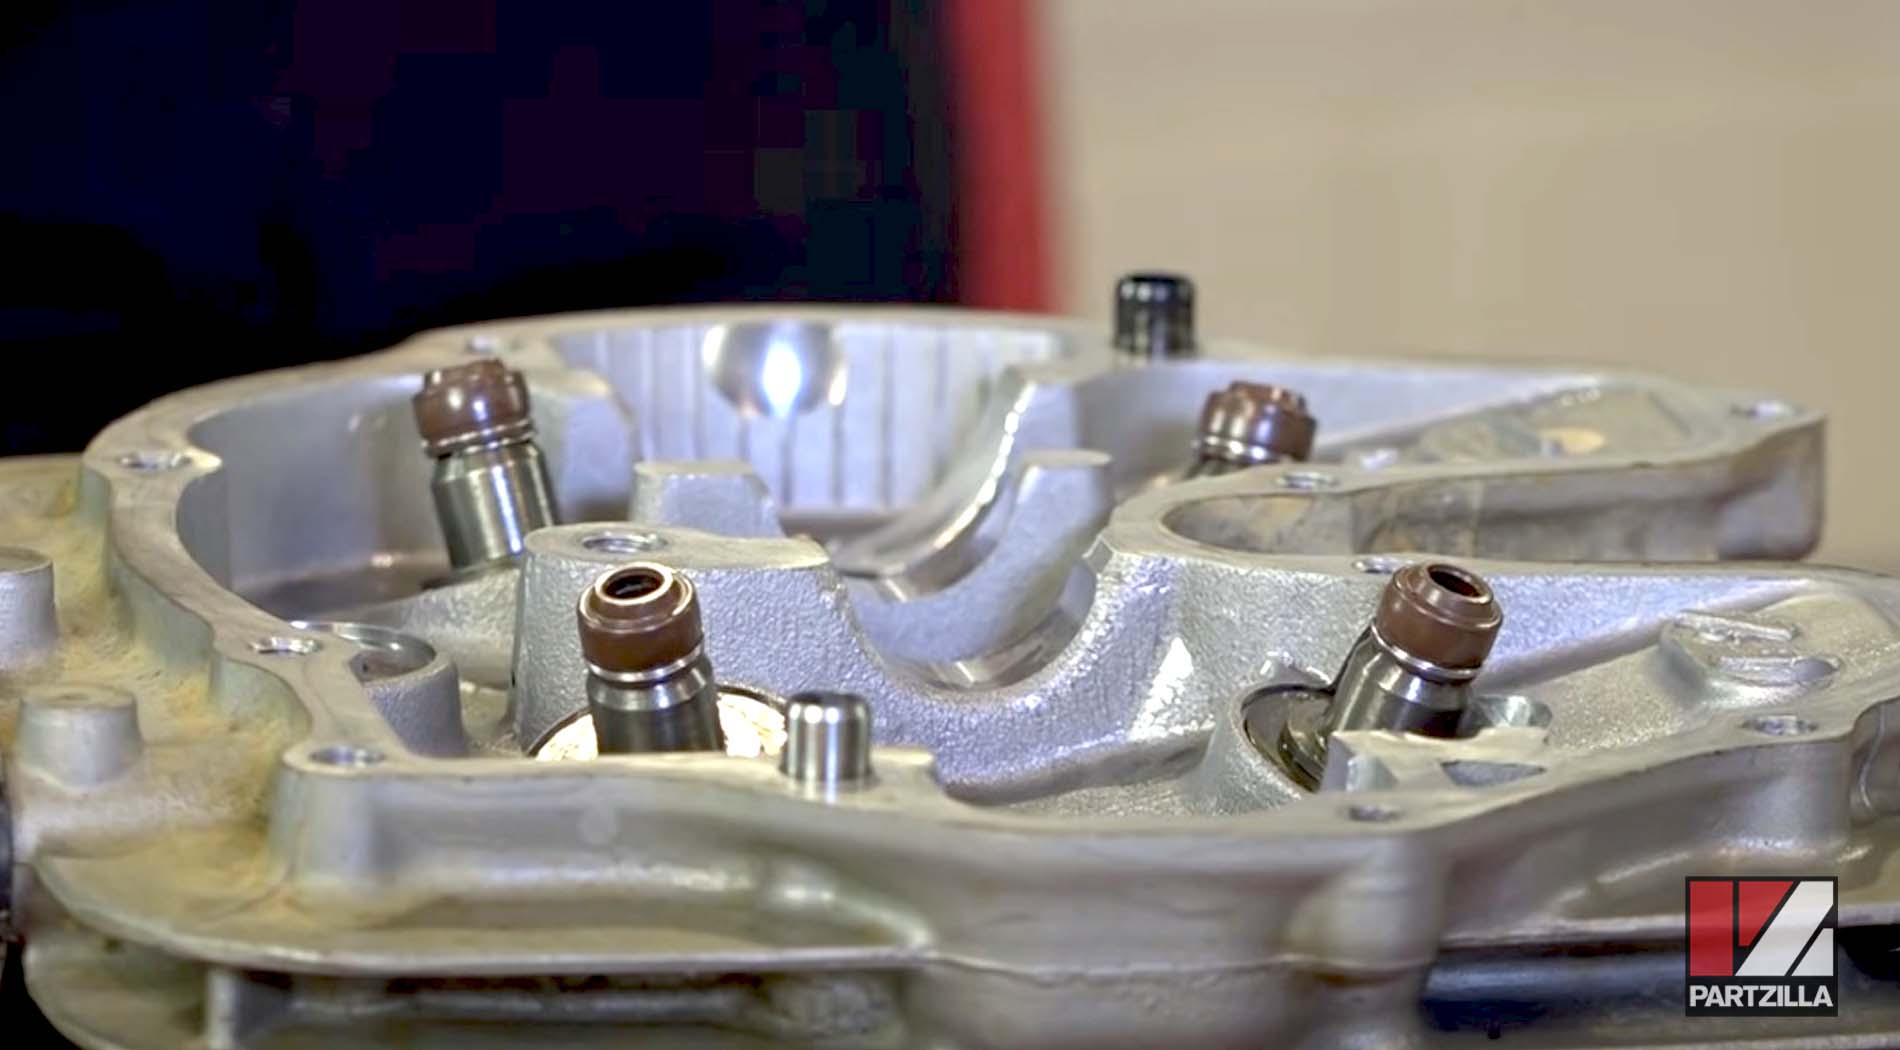 Honda TRX400 top end rebuild valve seals